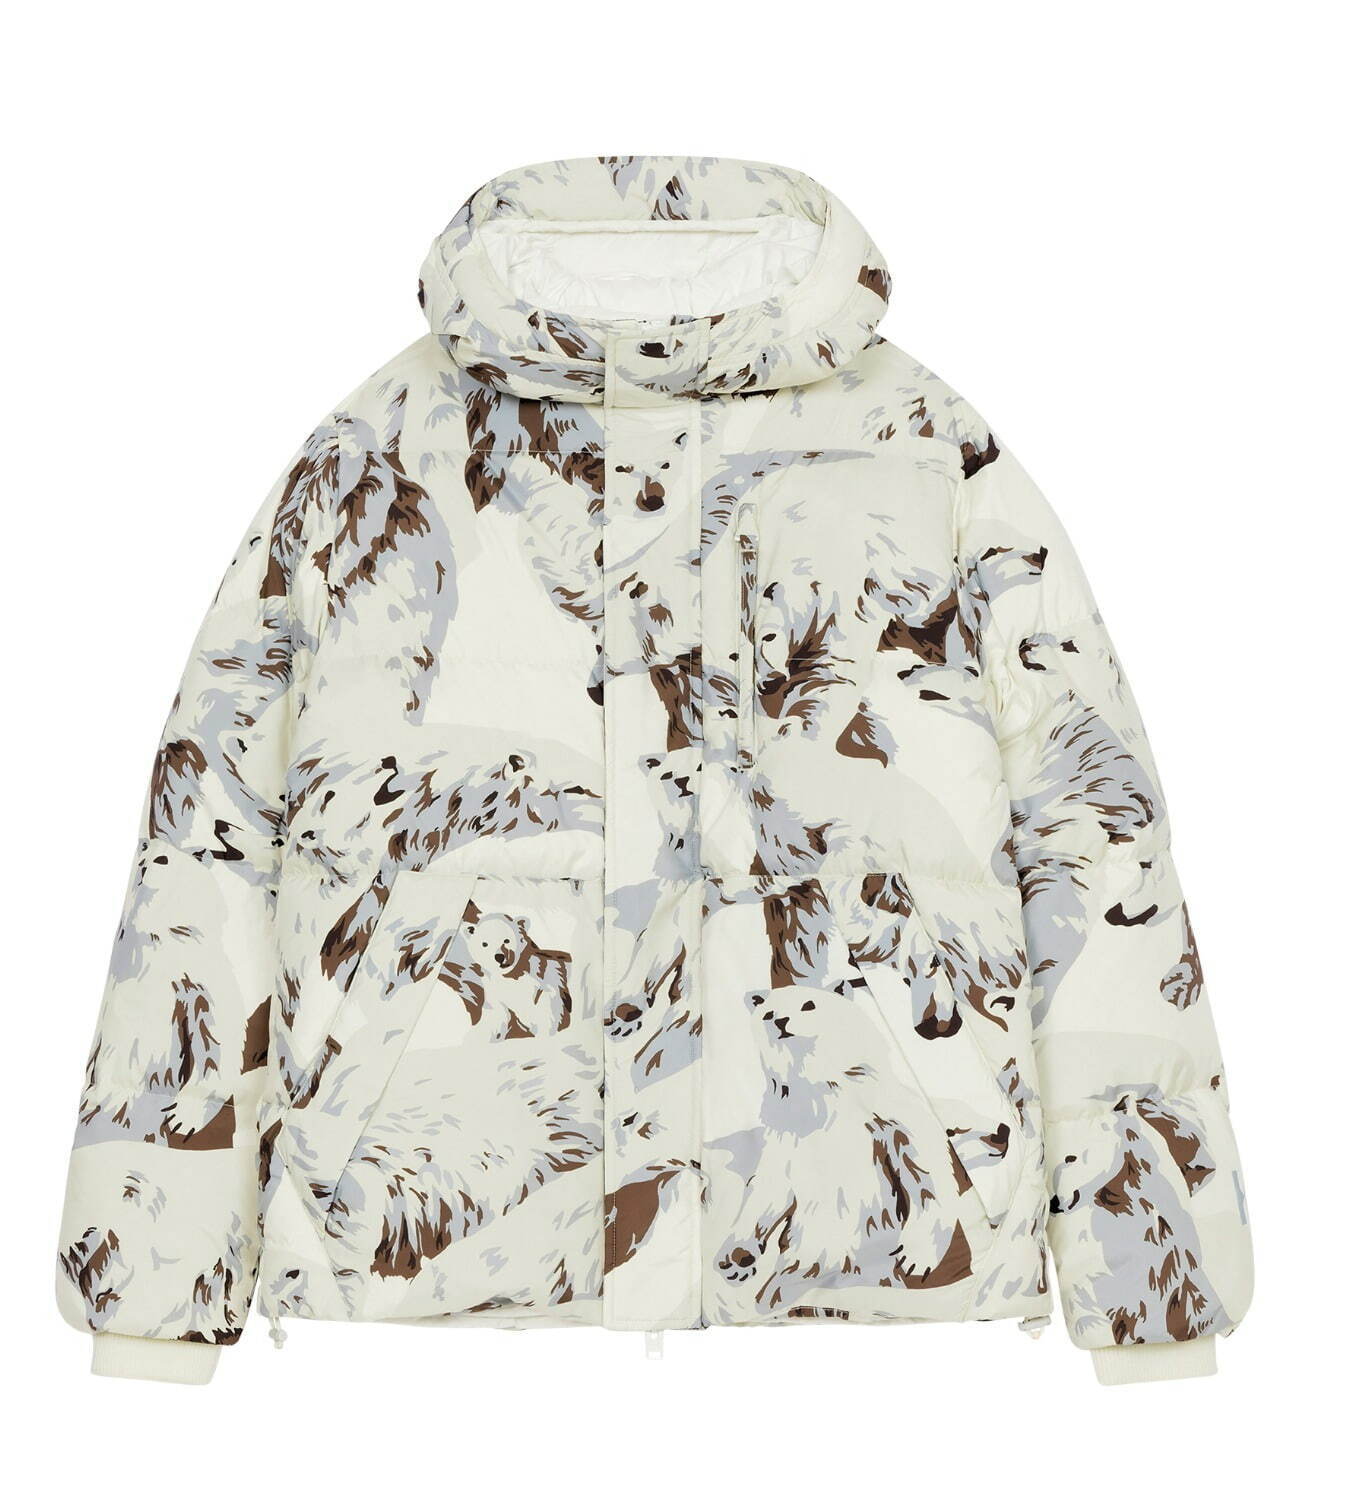 ケンゾー シロクマ ダウンジャケットやニットウェア 北極の情景 着想のホワイト グレーで ファッションプレス